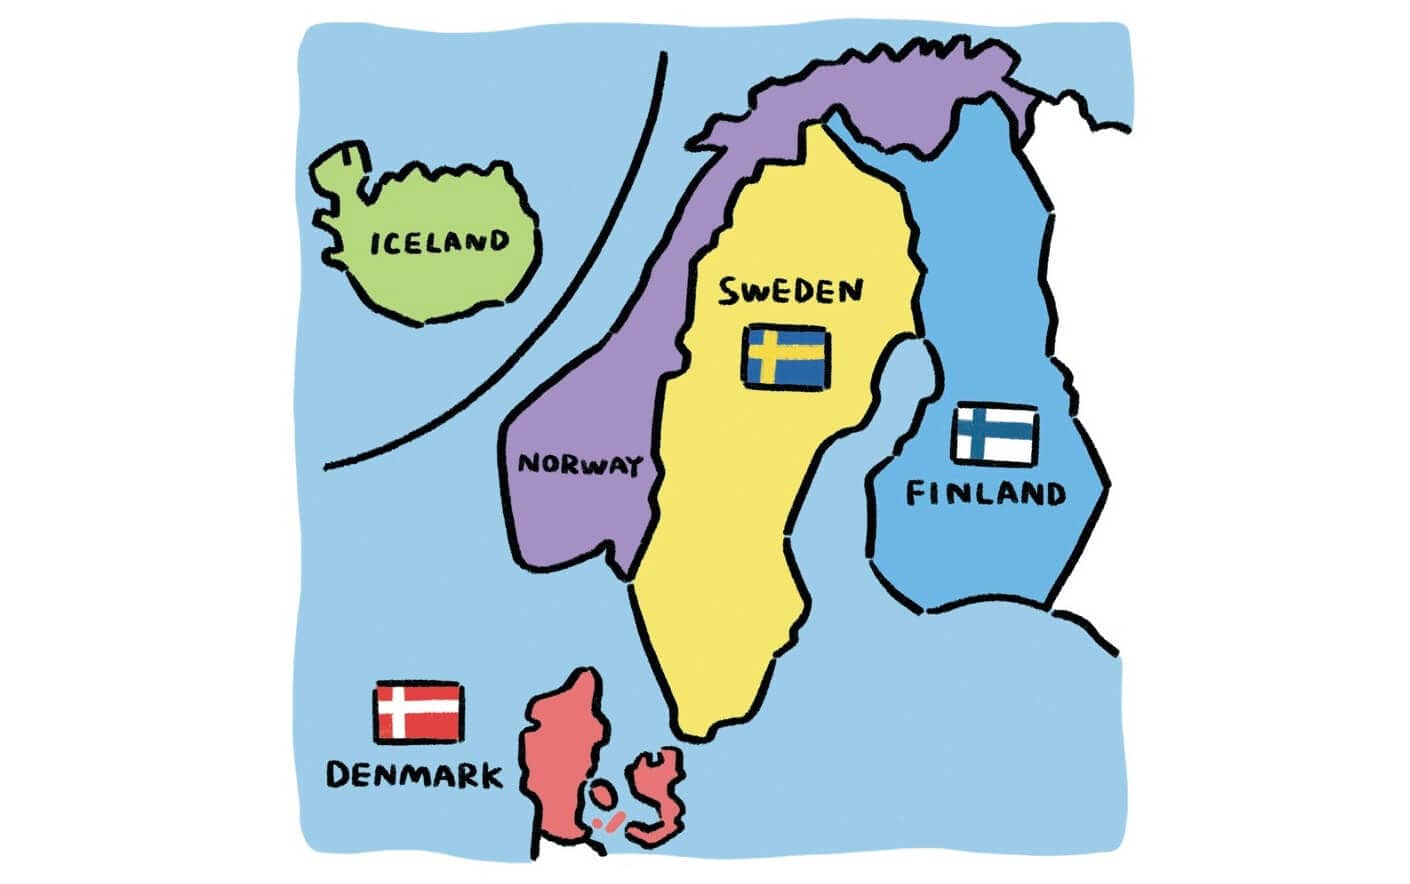 北欧 とひとくくりにしてしまうけれど 教えて デンマーク スウェーデン フィンランドのこと Lee